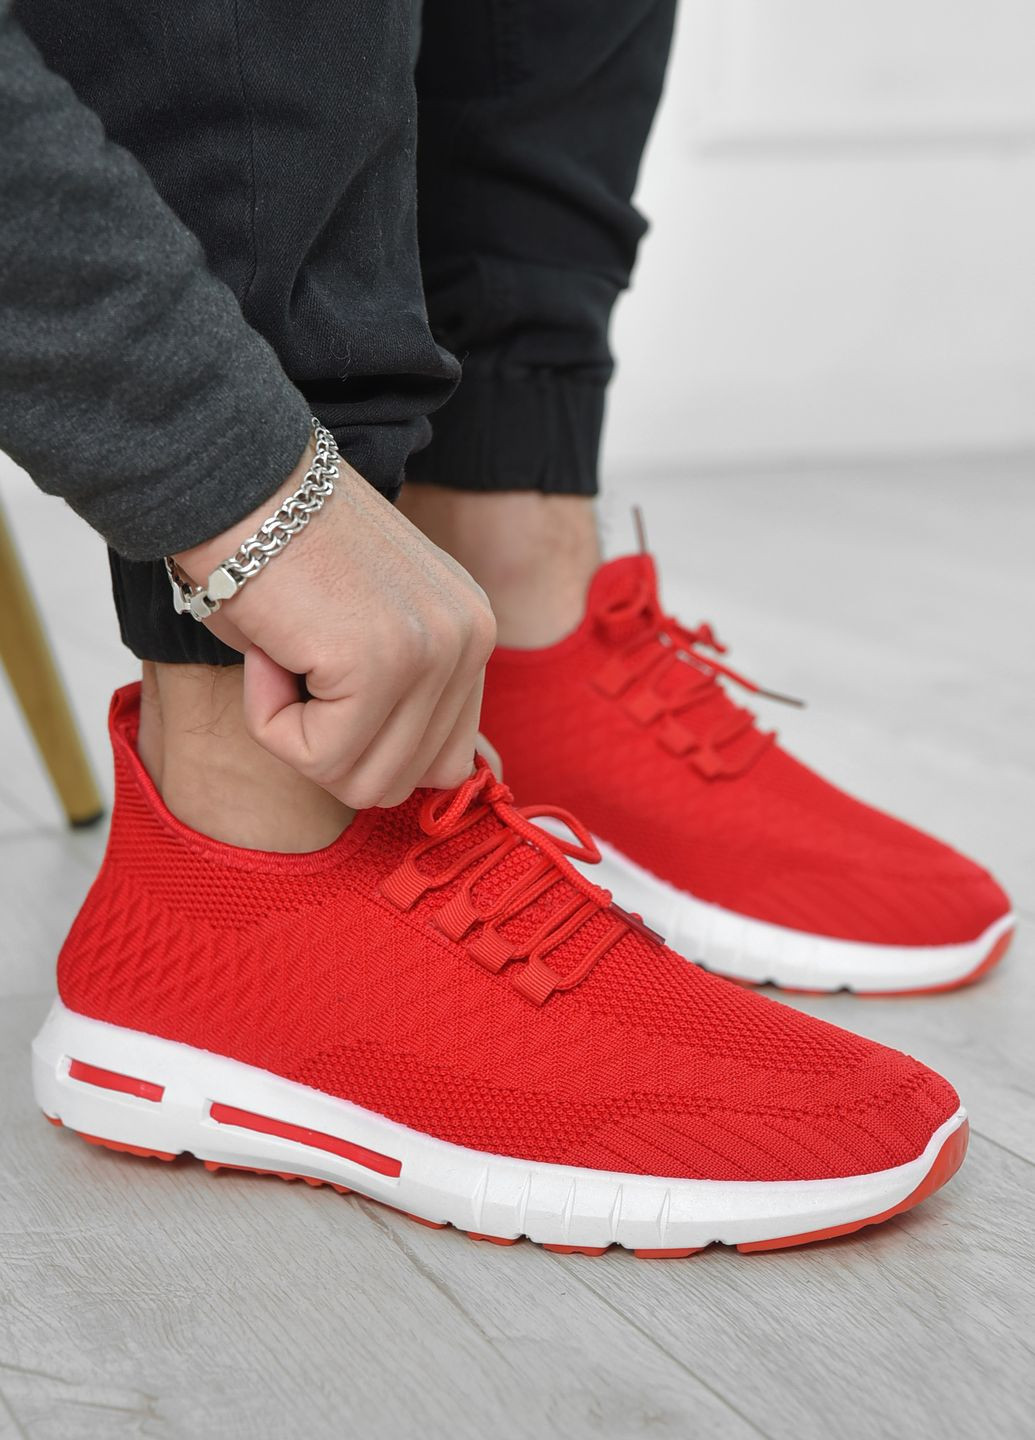 Красные демисезонные кроссовки мужские красного цвета текстиль Let's Shop